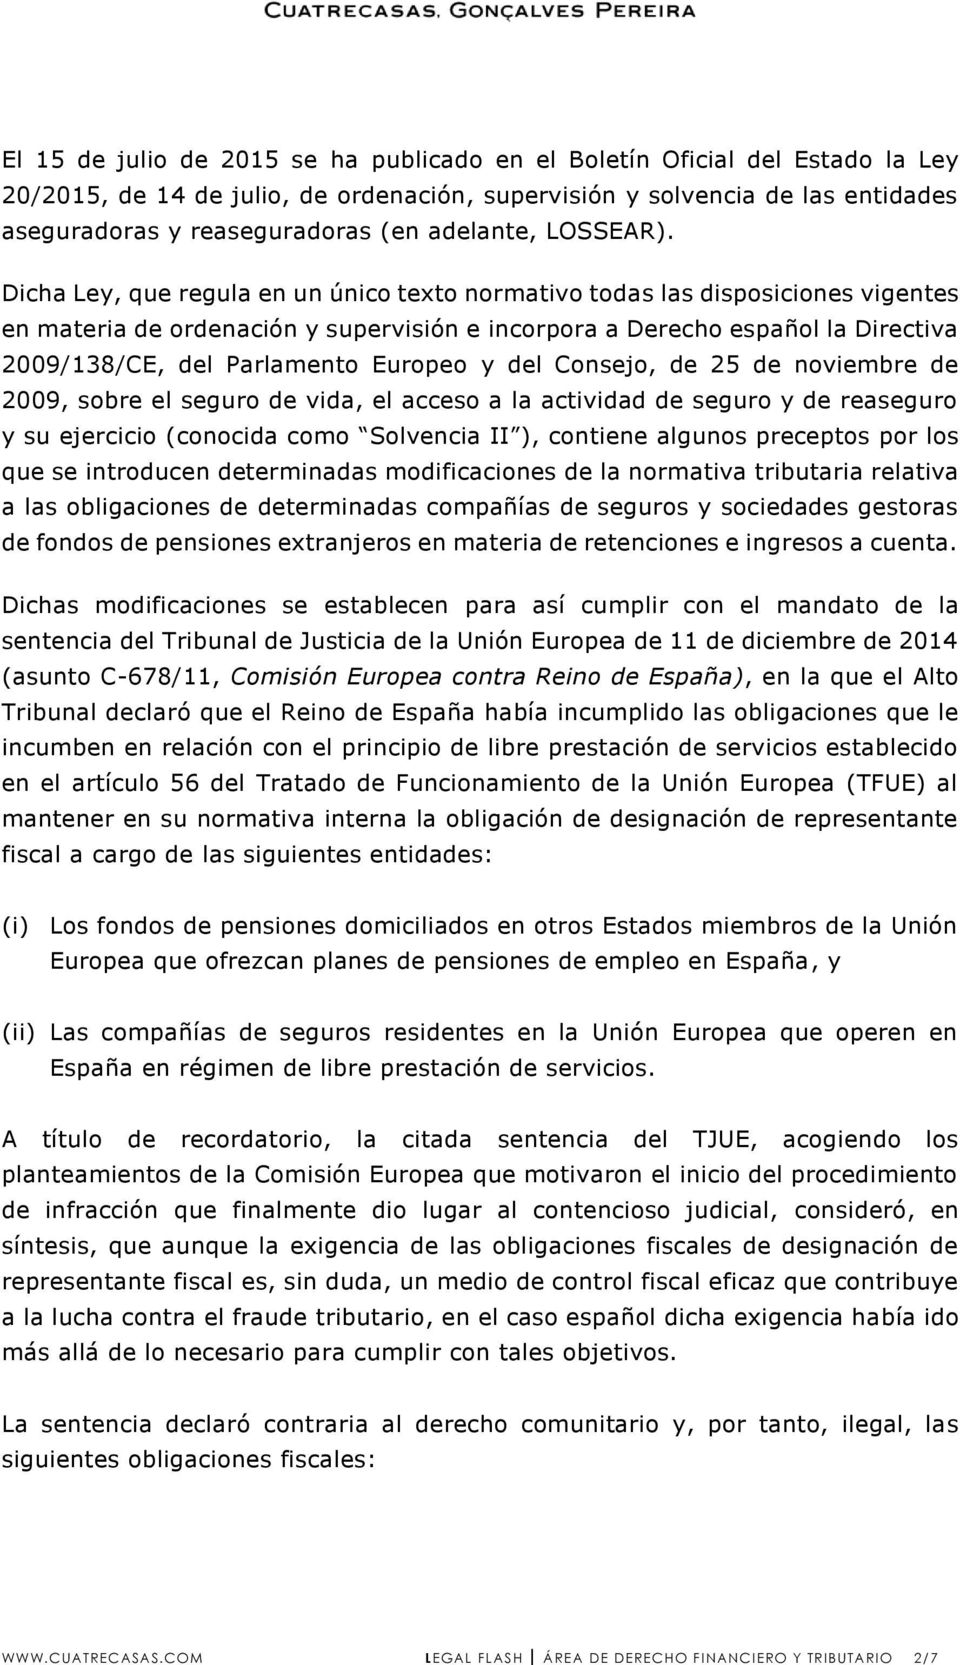 Dicha Ley, que regula en un único texto normativo todas las disposiciones vigentes en materia de ordenación y supervisión e incorpora a Derecho español la Directiva 2009/138/CE, del Parlamento